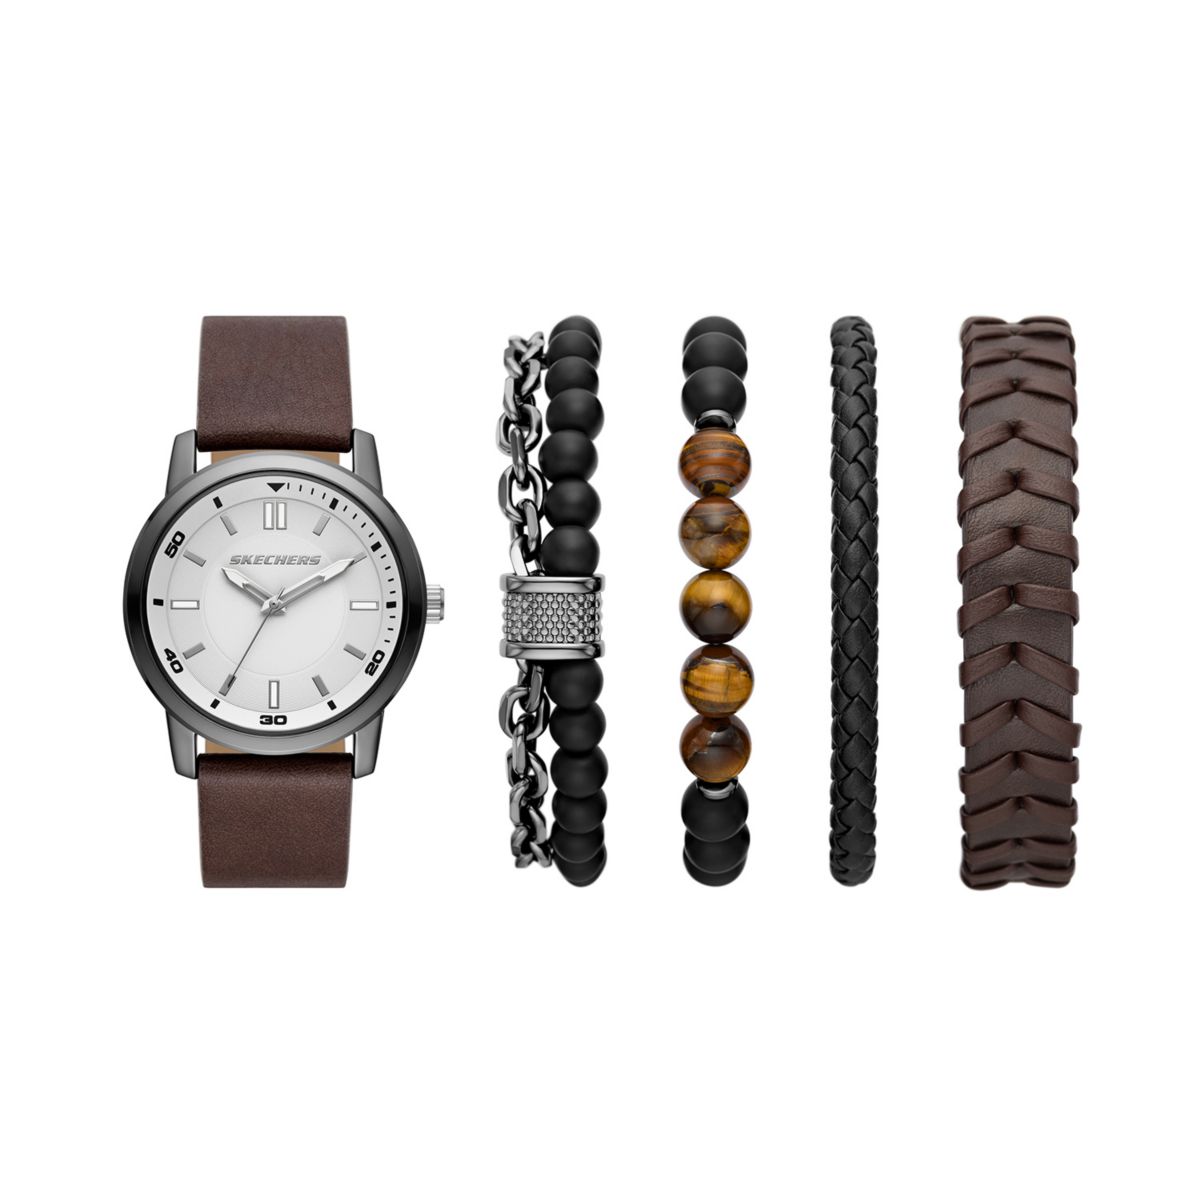 Мужские часы и браслет Skechers® из бронзы и коричневого цвета SKECHERS